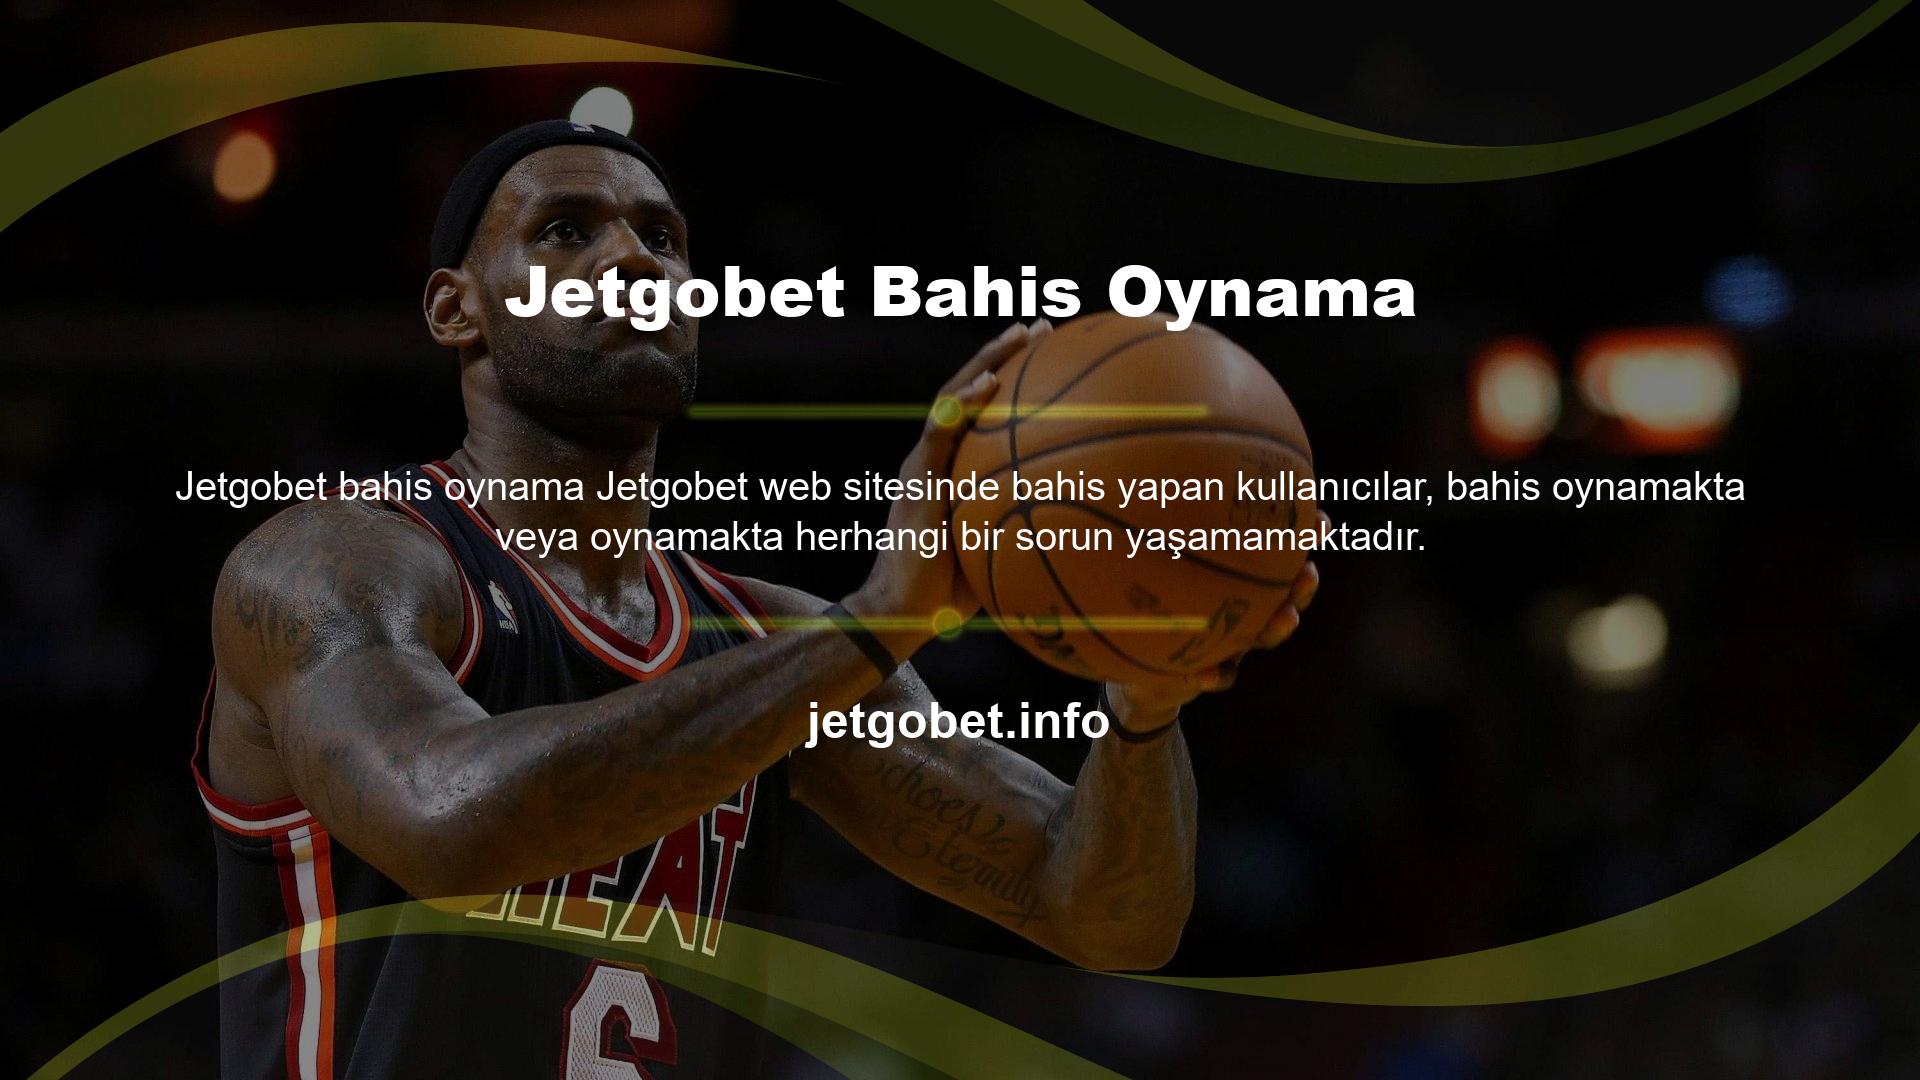 Jetgobet web sitelerinde bahis oynamak ve oyun oynamak, saygın oyun sağlayıcıları tarafından denetlenir ve düzenlenir